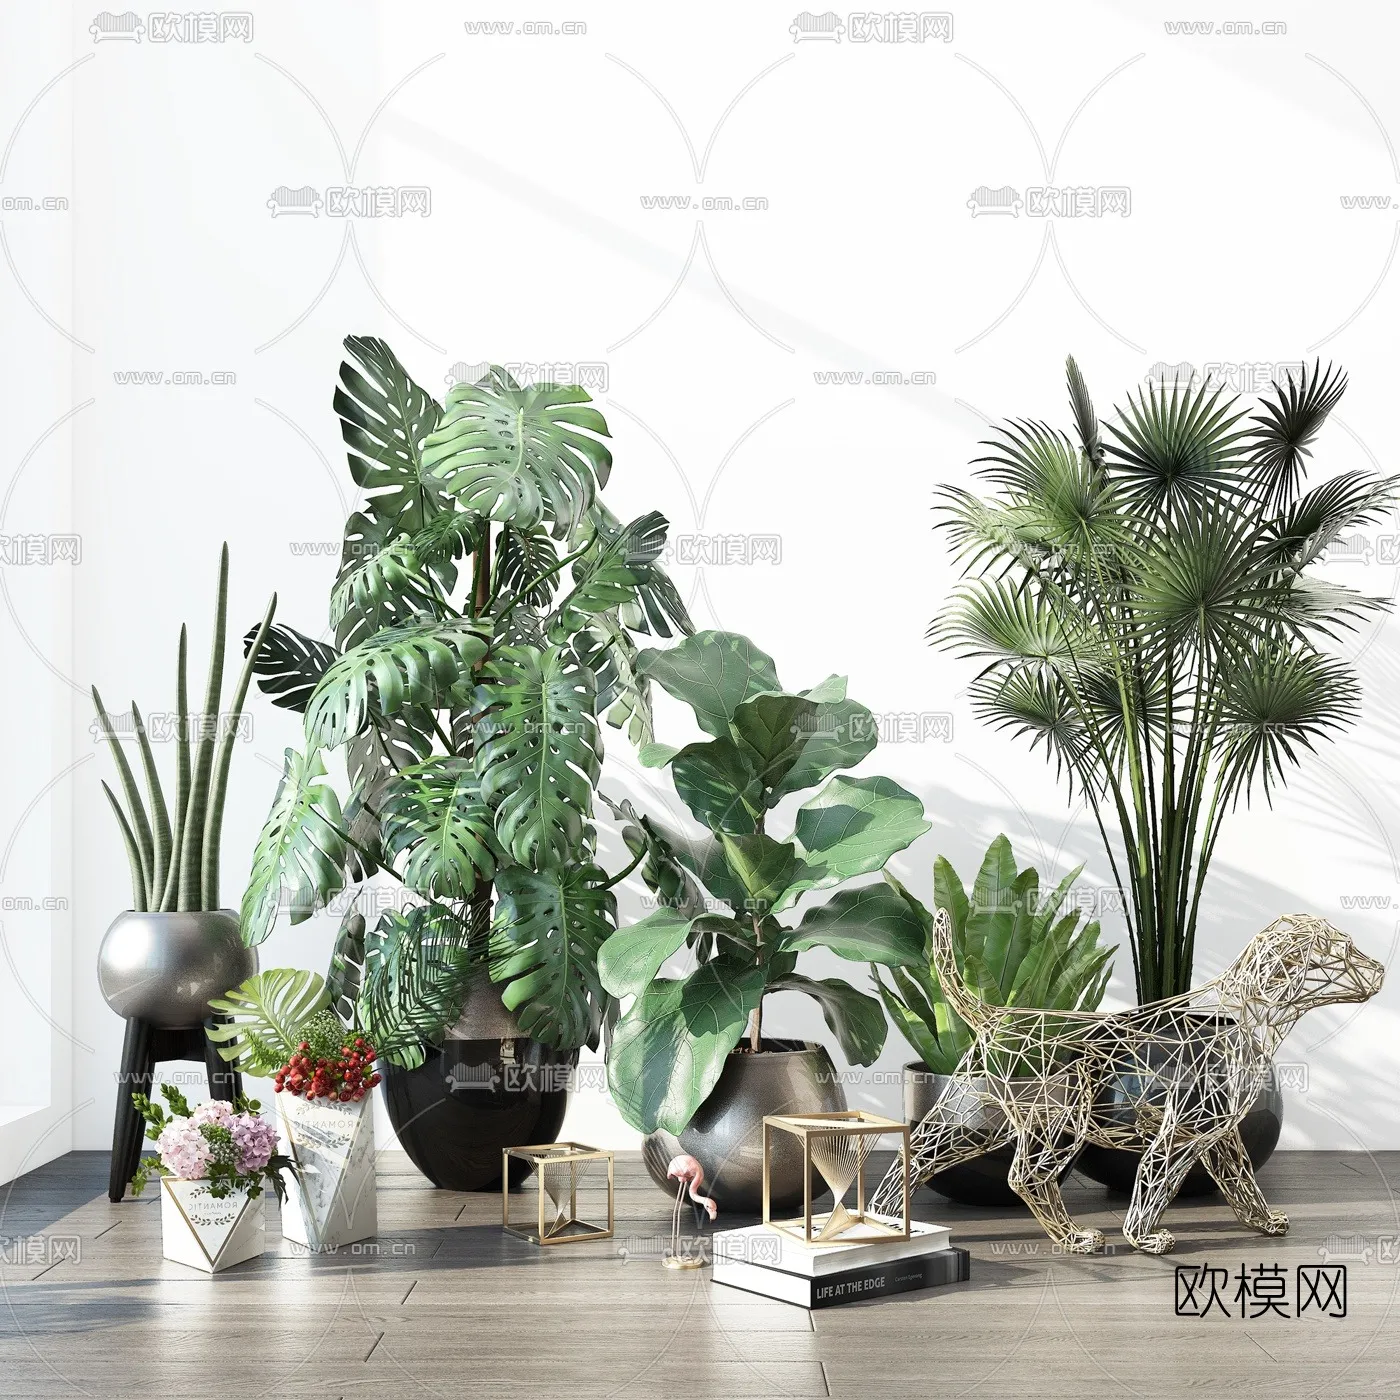 PLANT 3D MODELS – 048